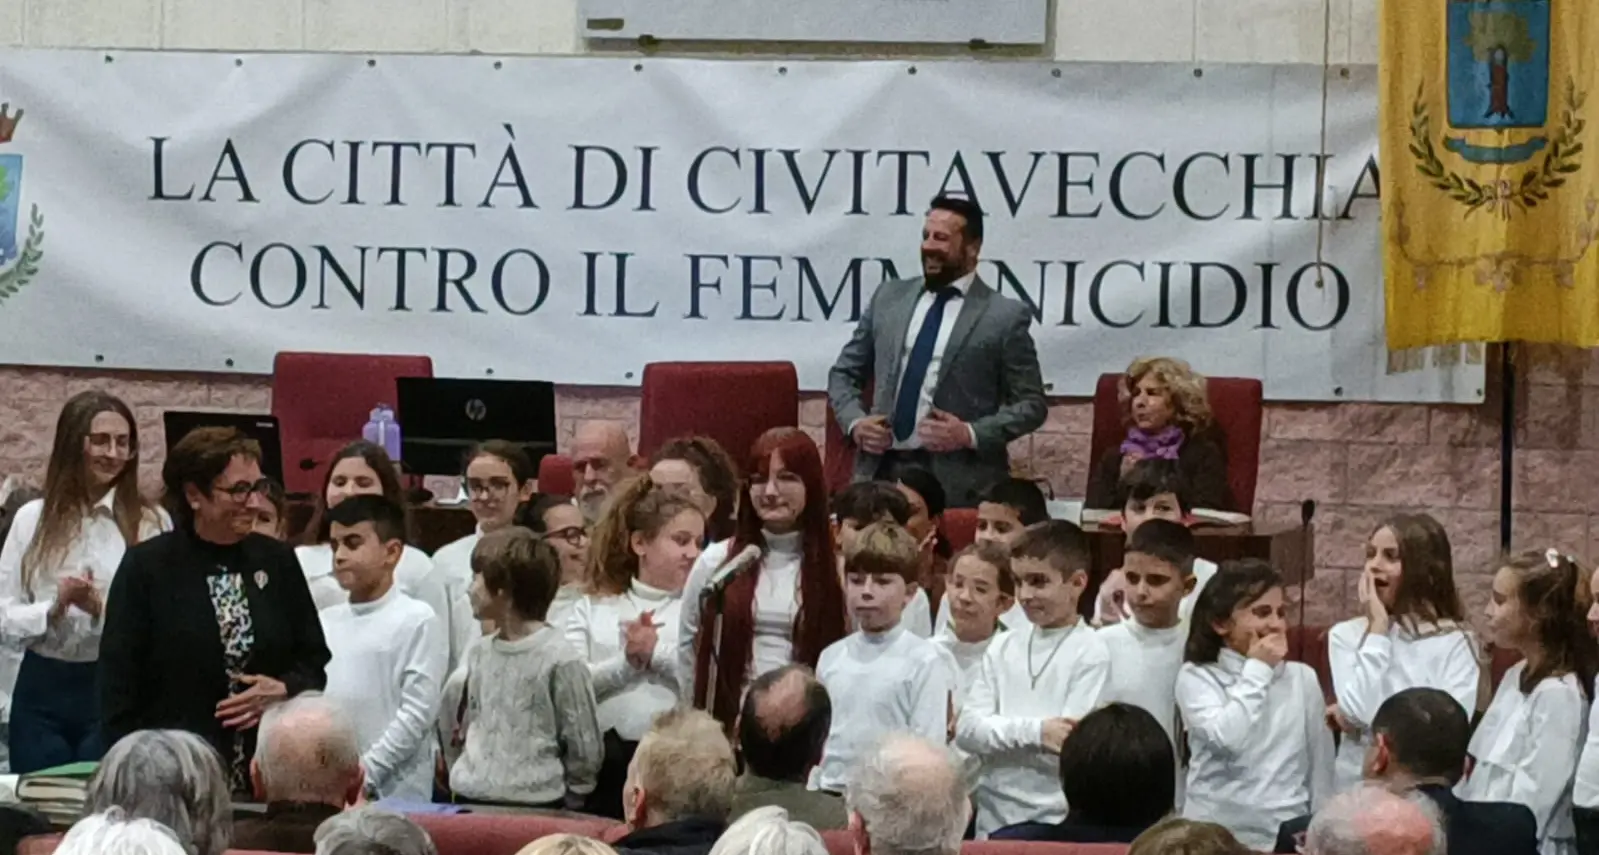 Il messaggio di pace del coro dei bimbi città di Civitavecchia